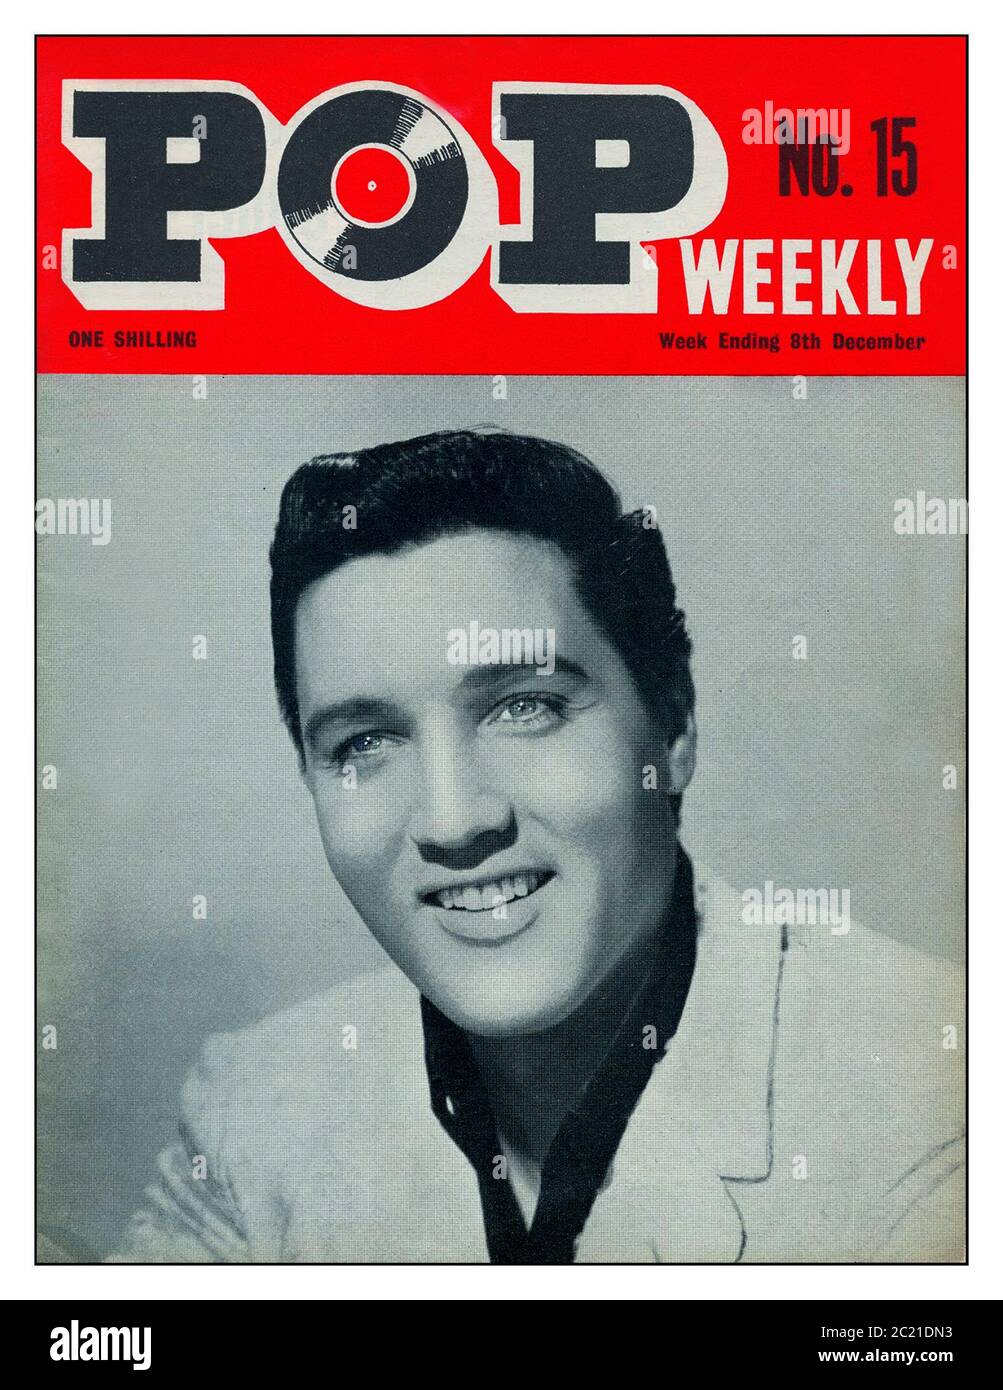 Elvis Presley Vintage 1960's British archive 'POP settimanale' rivista No 15 con copertina anteriore ritratto promozionale Elvis Presley. 8 dicembre 1963 prezzo a una Shilling £sd valuta pubblicazione UK teenager musica periodico notizie rivista per i fan POP degli anni '60 Foto Stock